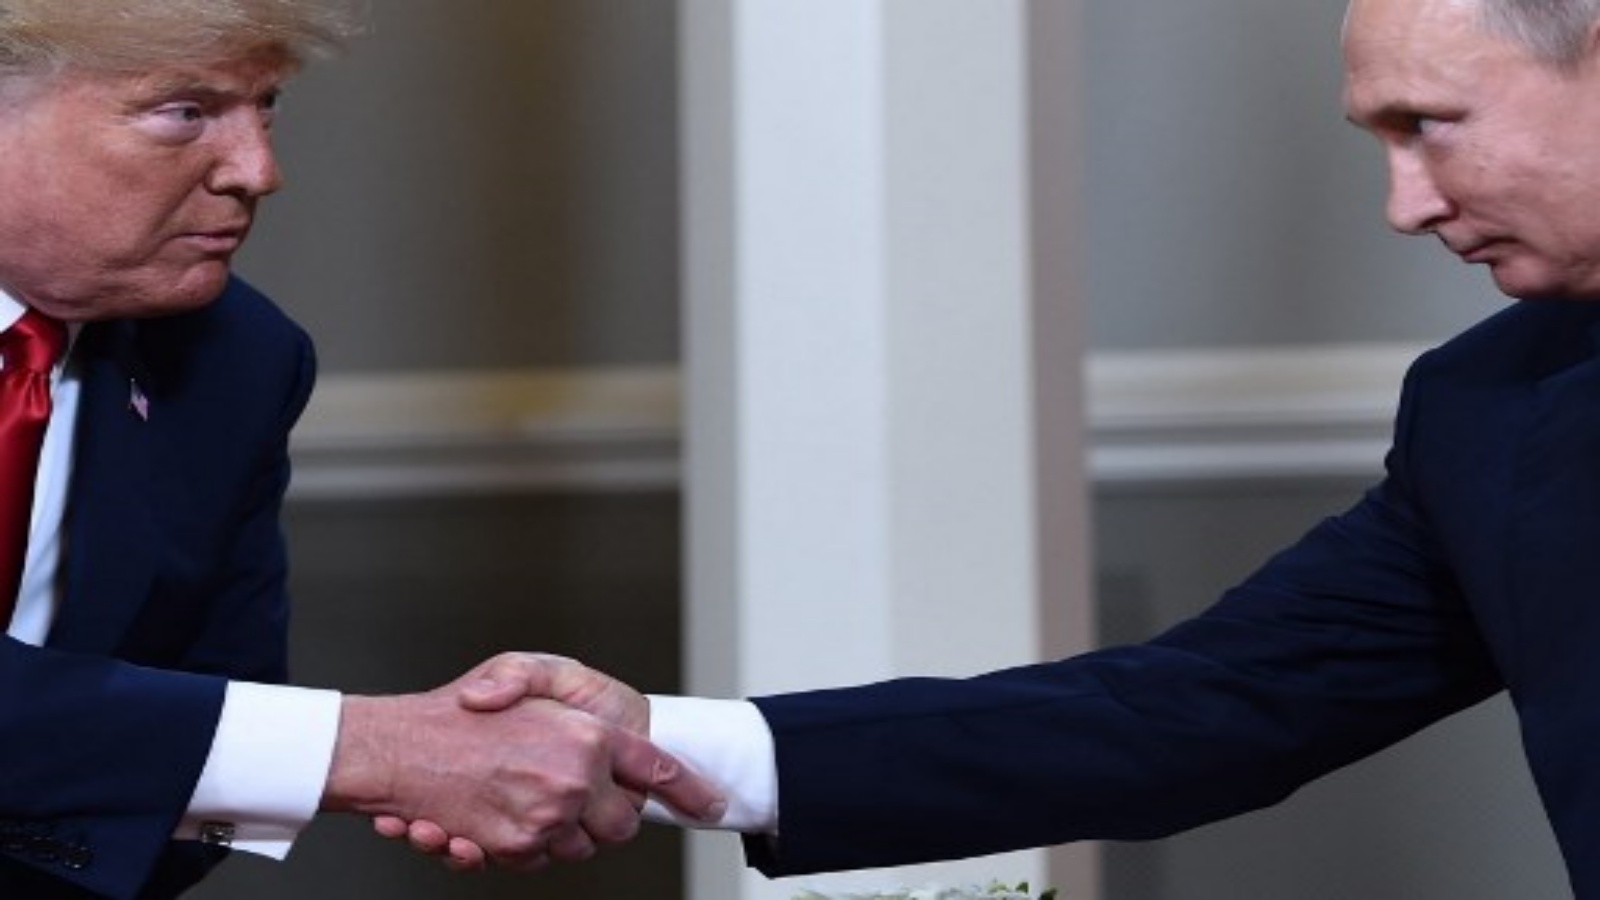 الرئيس الأميركي دونالد ترمب والرئيس الروسي فلاديمير بوتين يتصافحان قبل اجتماع في هلسنكي. كان الرئيس الأمريكي دونالد ترمب عام 2018